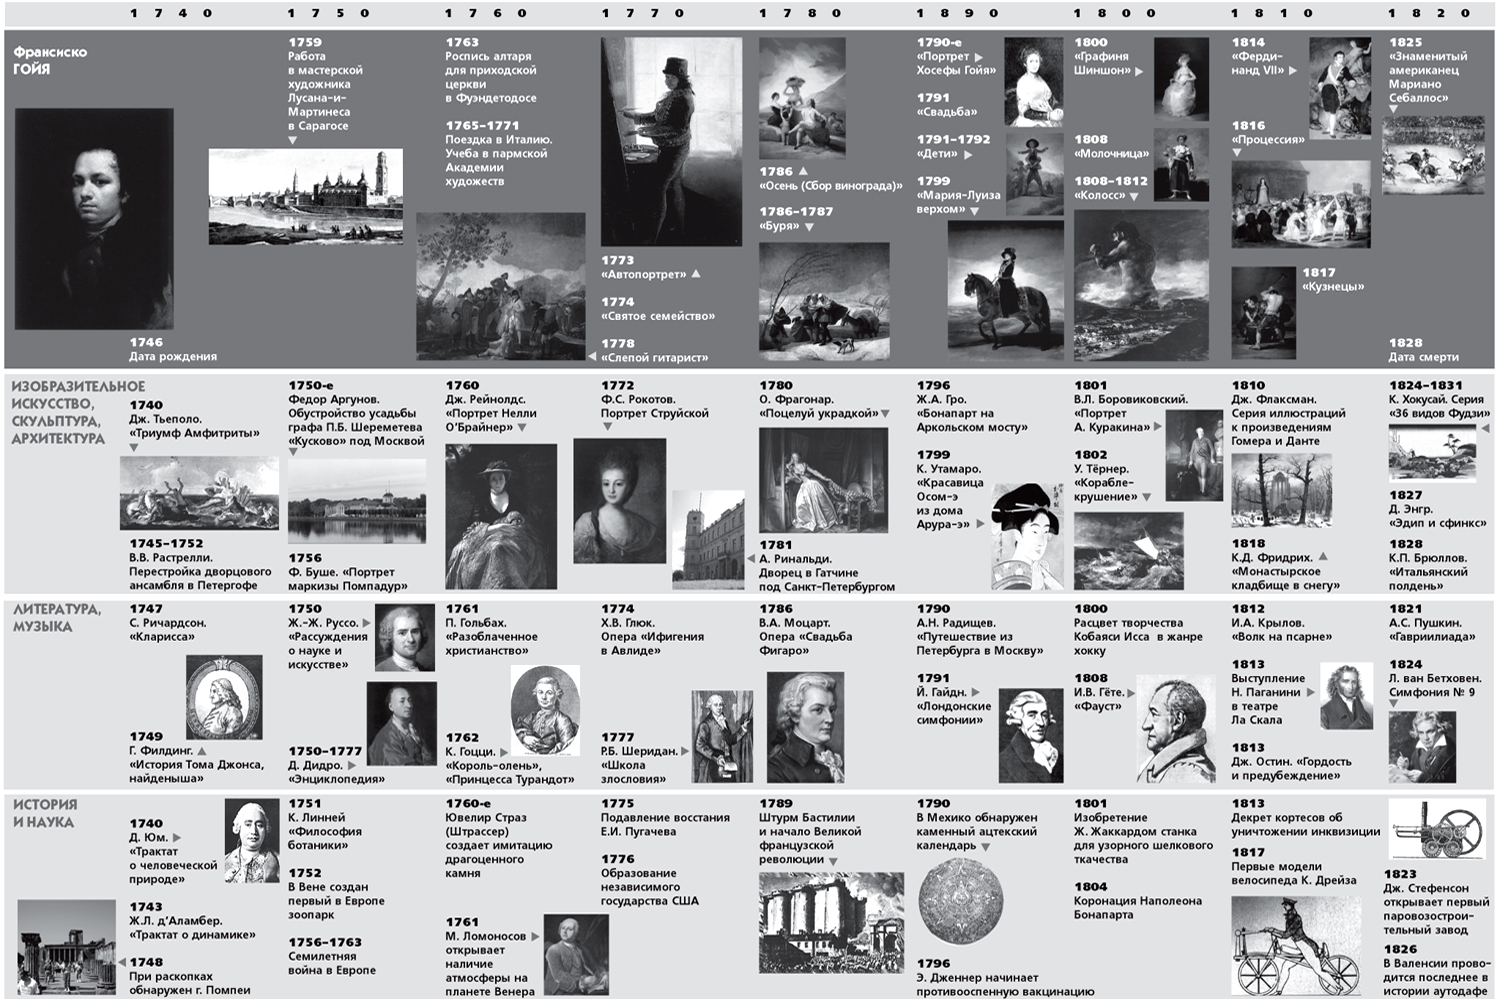 Хронологическая таблица истории искусств